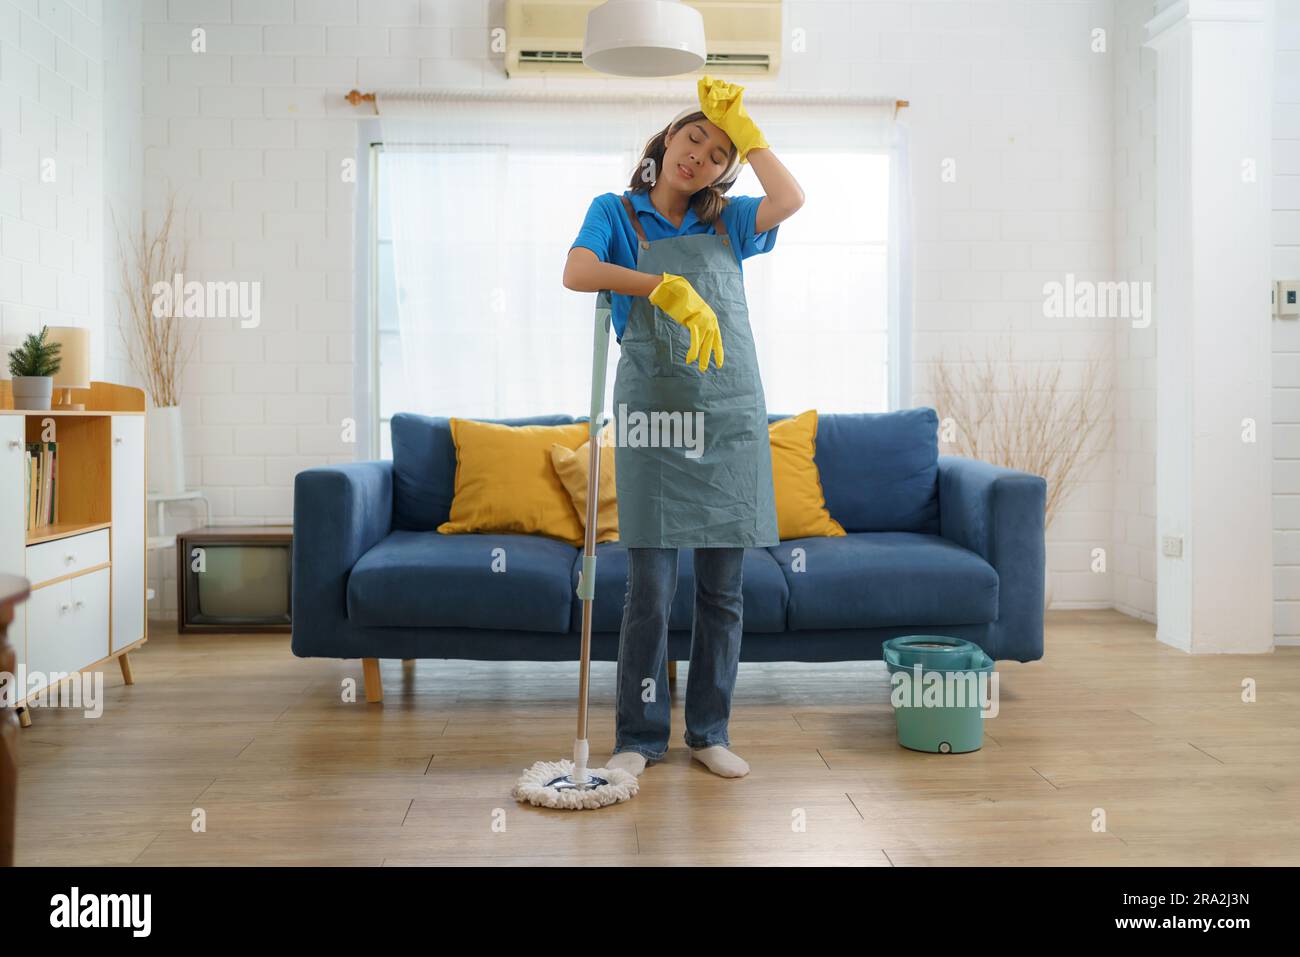 Une femme de ménage asiatique épuisée lutte avec la fatigue tout en nettoyant la maison, présentant les défis et le travail difficile derrière la maison Banque D'Images